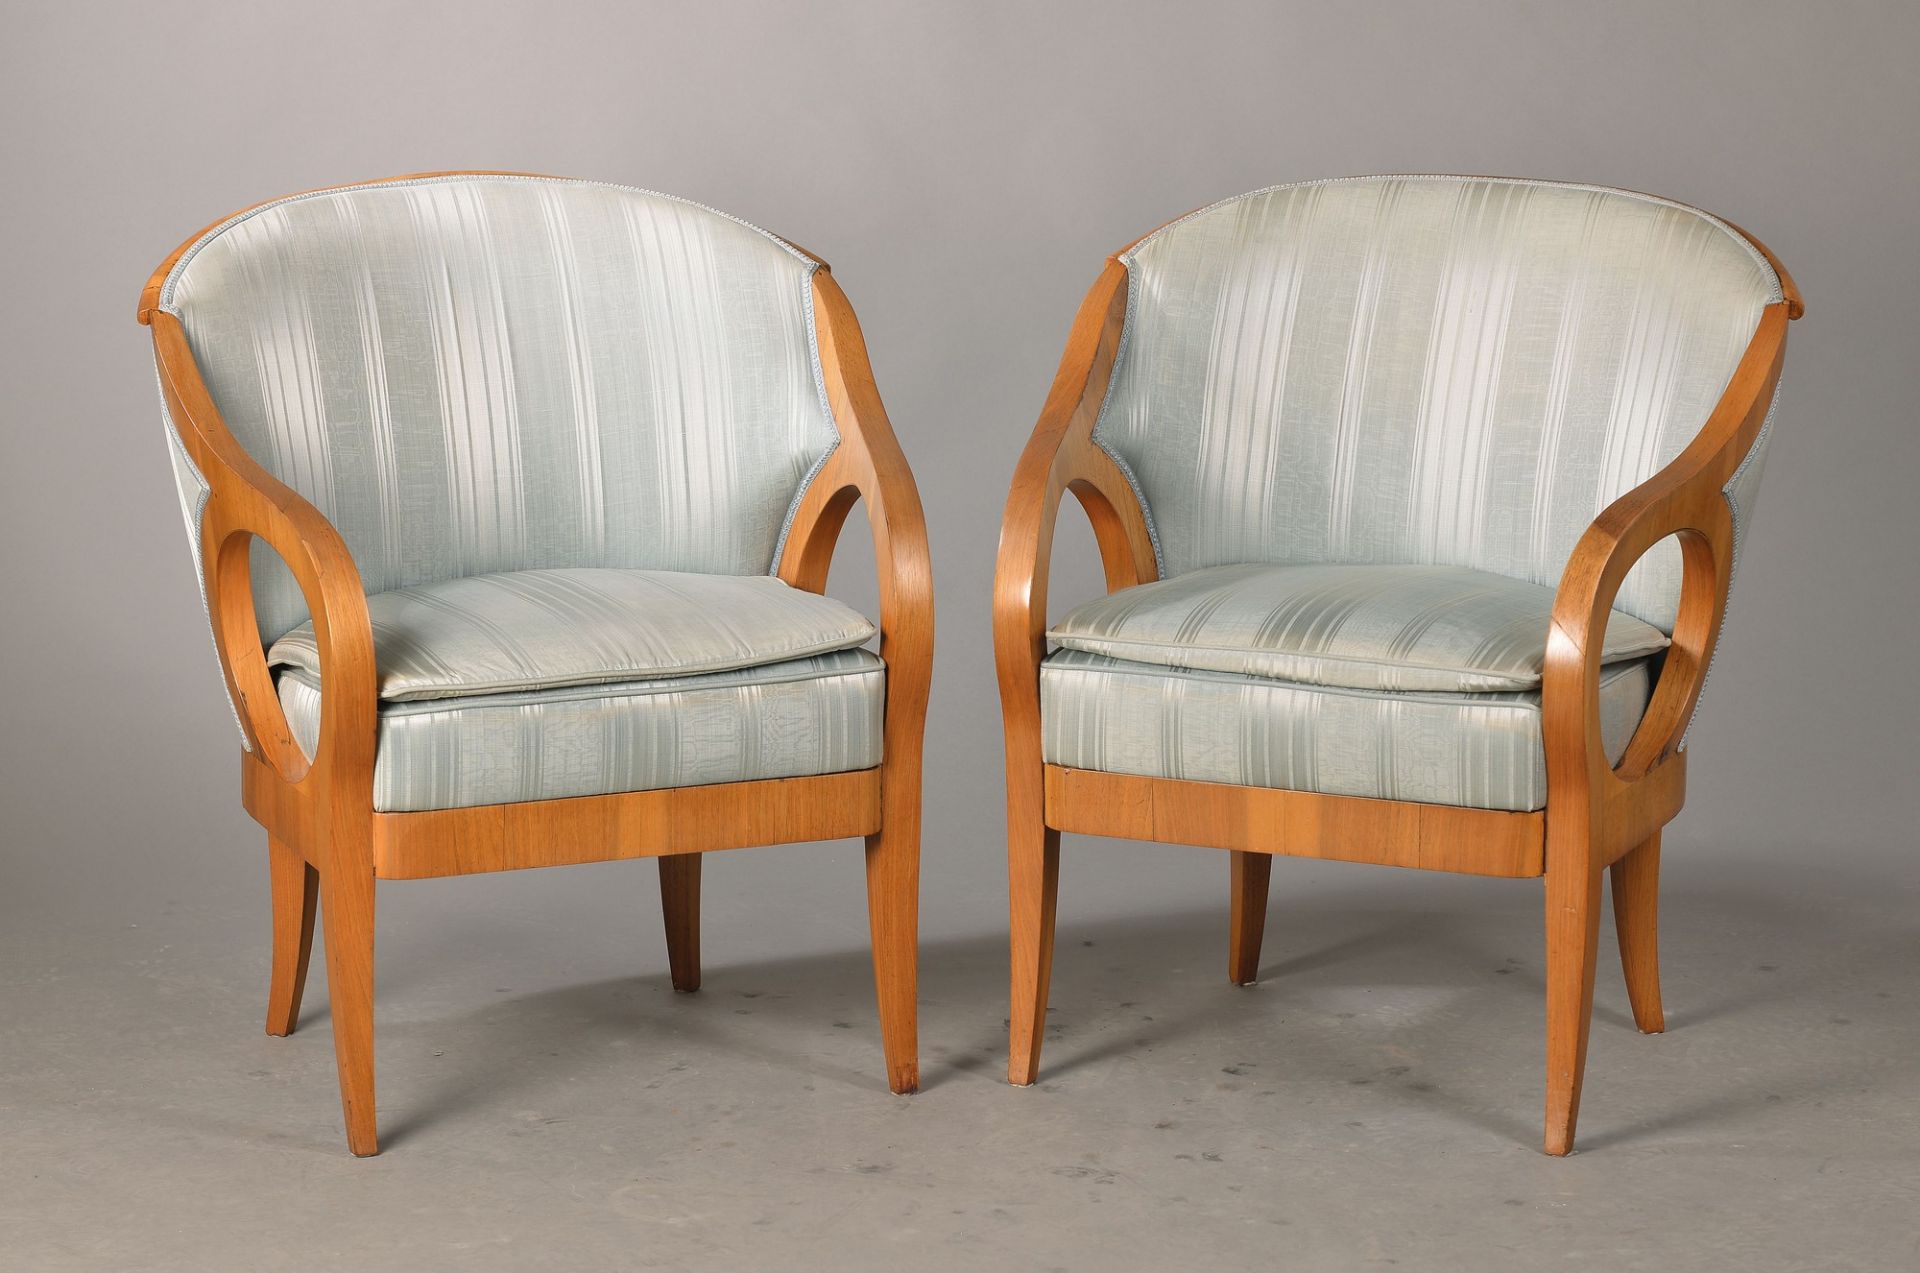 couple of armchairs, German, around 1900, Biedermeier style, walnut veneer, elegant style typical